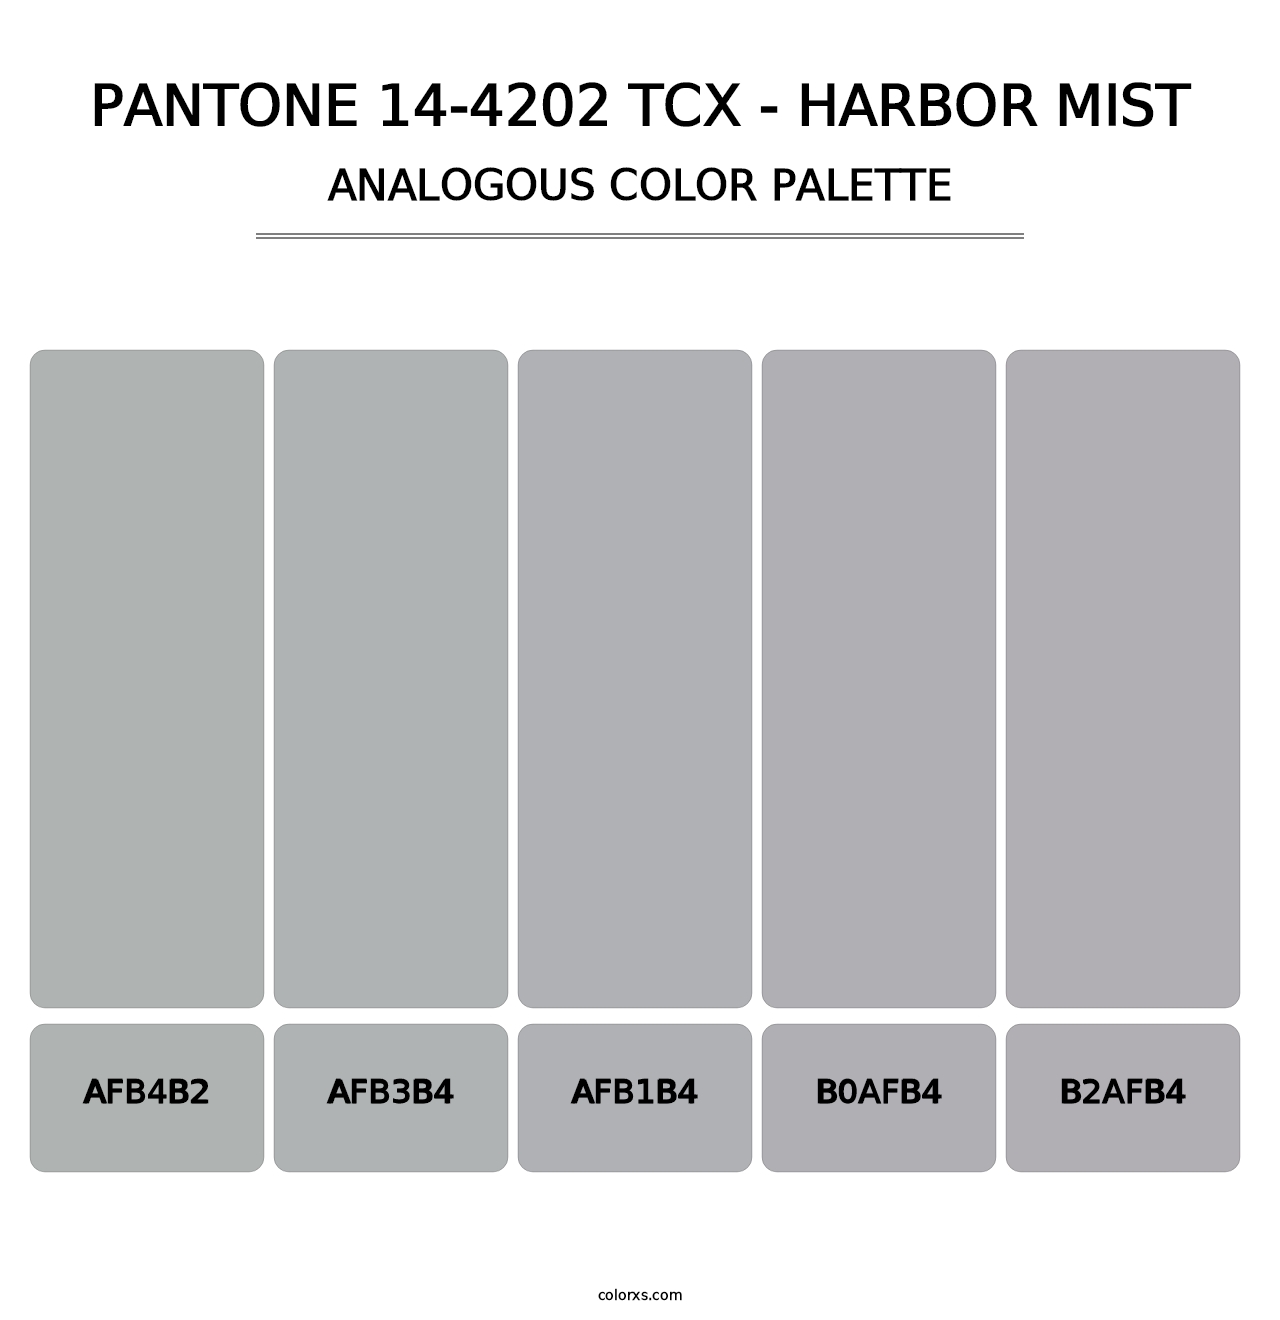 PANTONE 14-4202 TCX - Harbor Mist - Analogous Color Palette